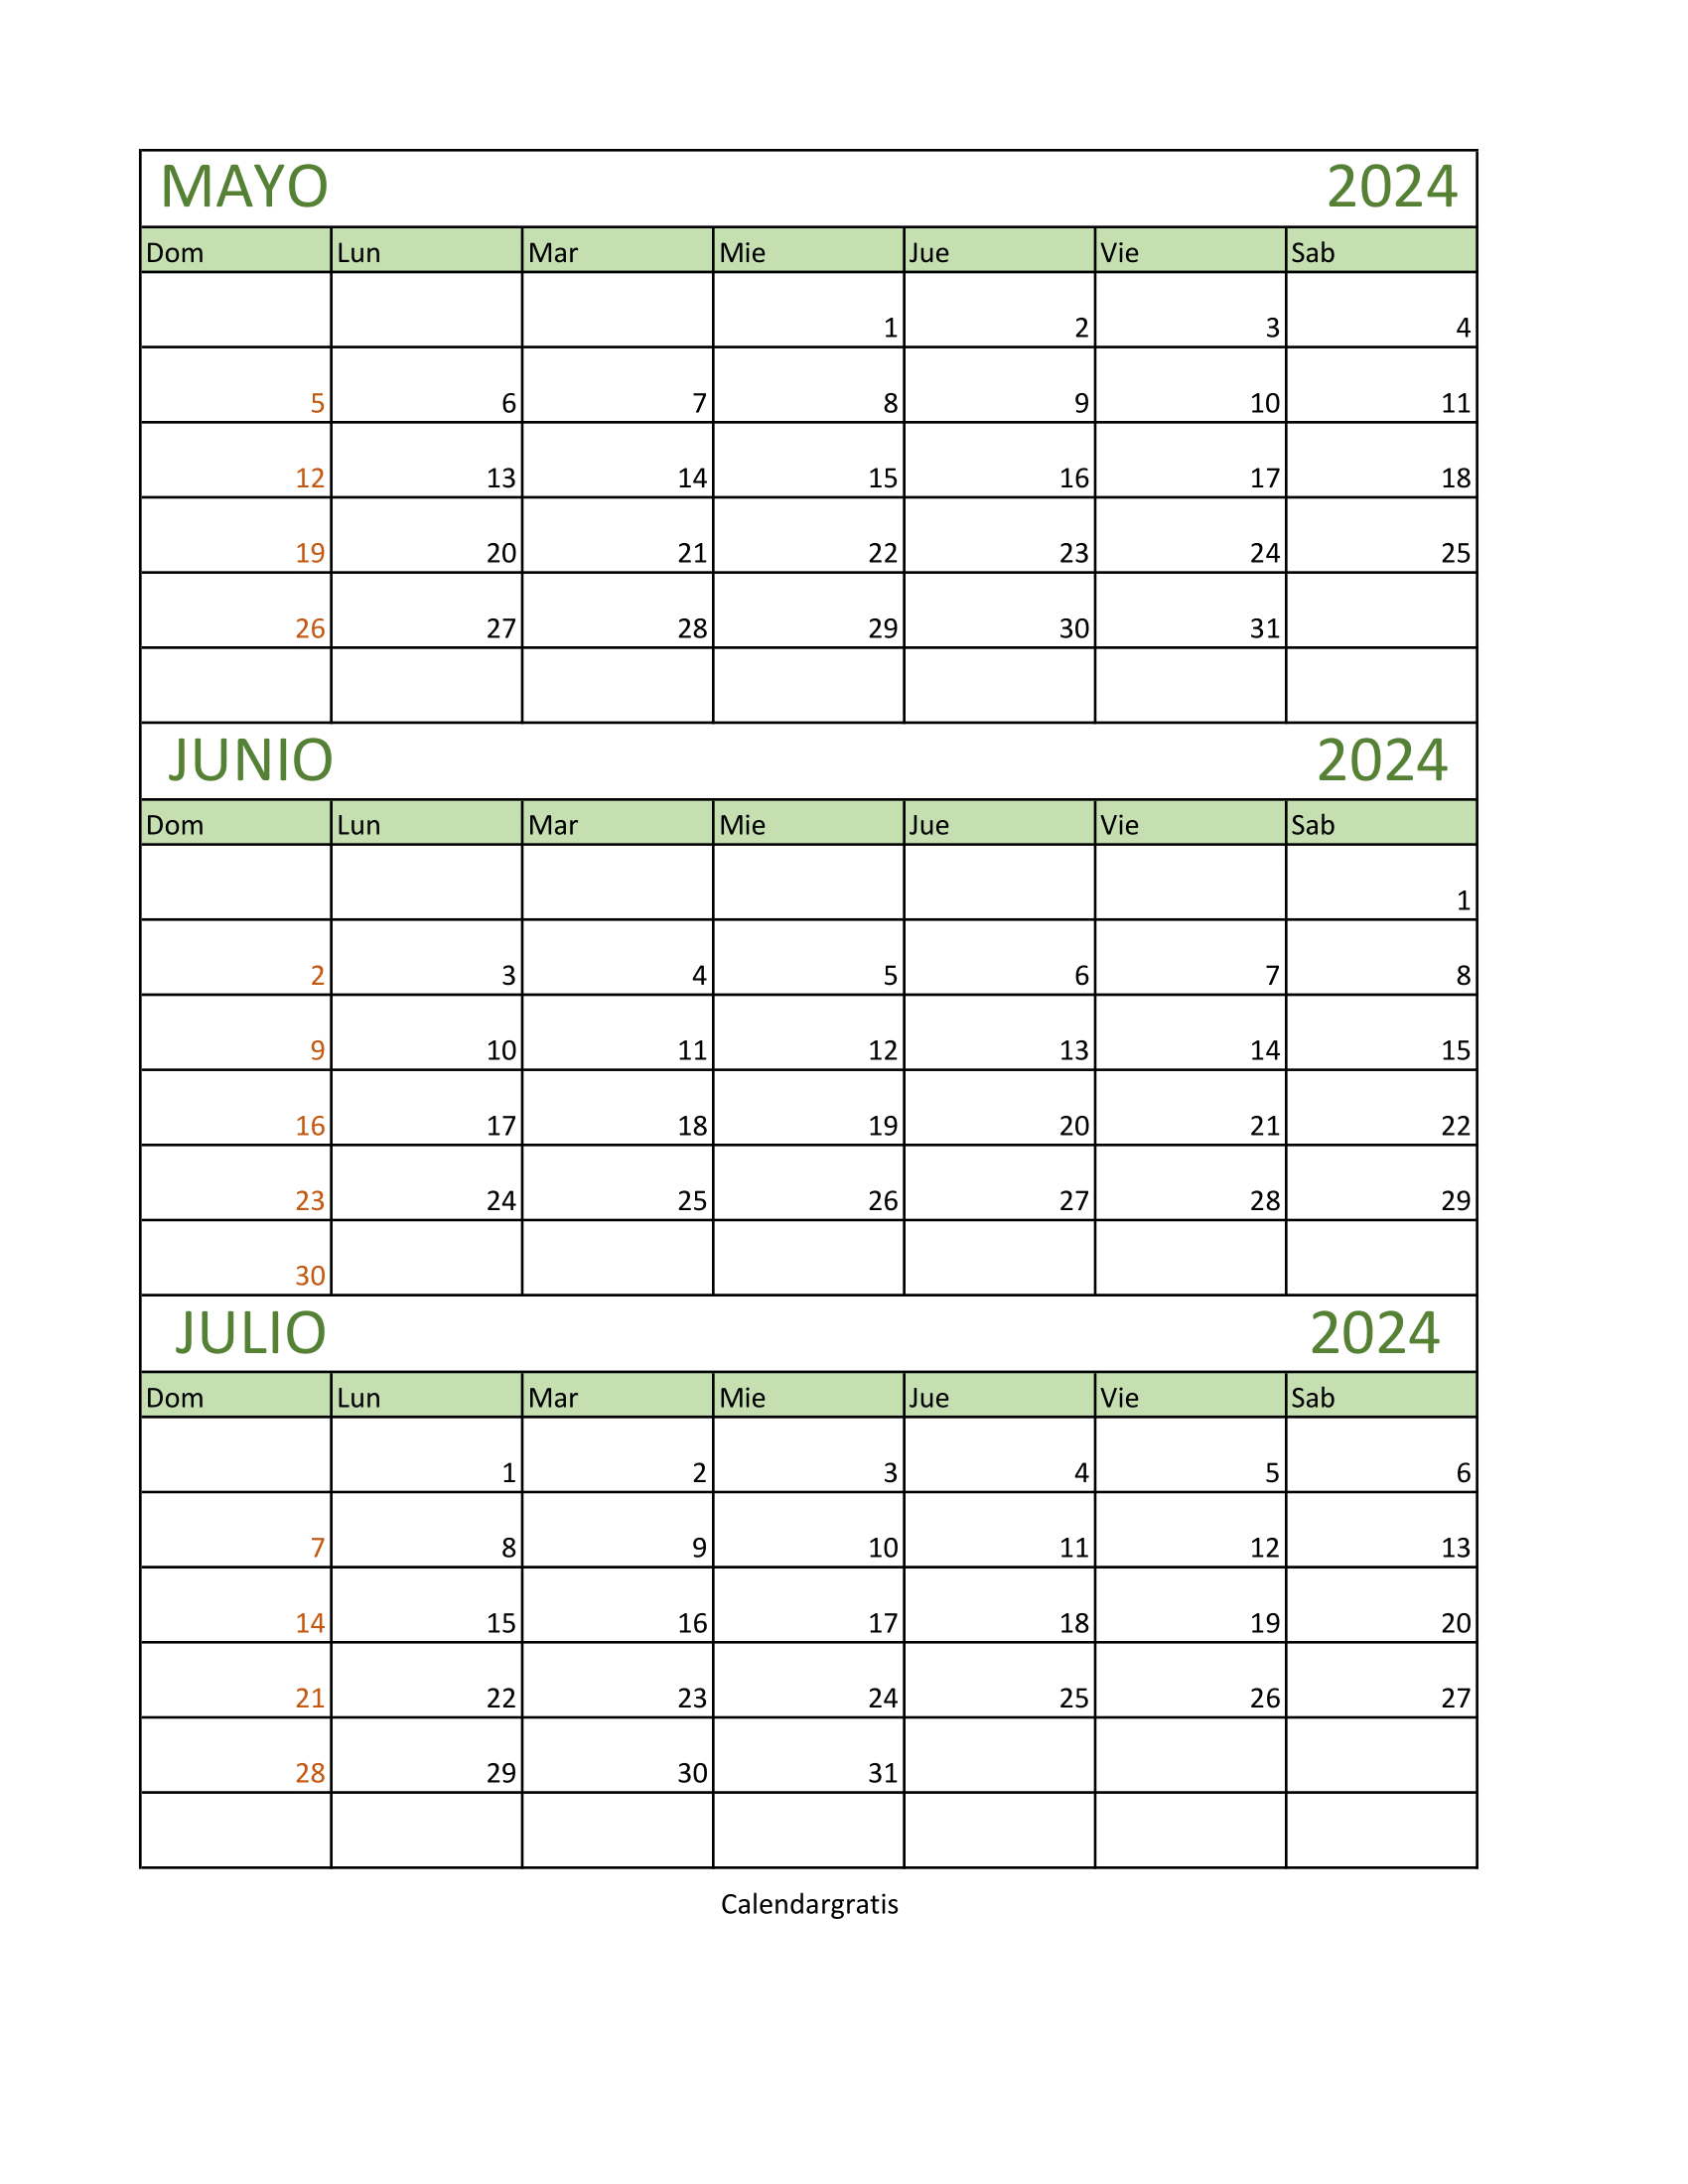 Calendario Mayo Junio y Julio 2024 Gratis